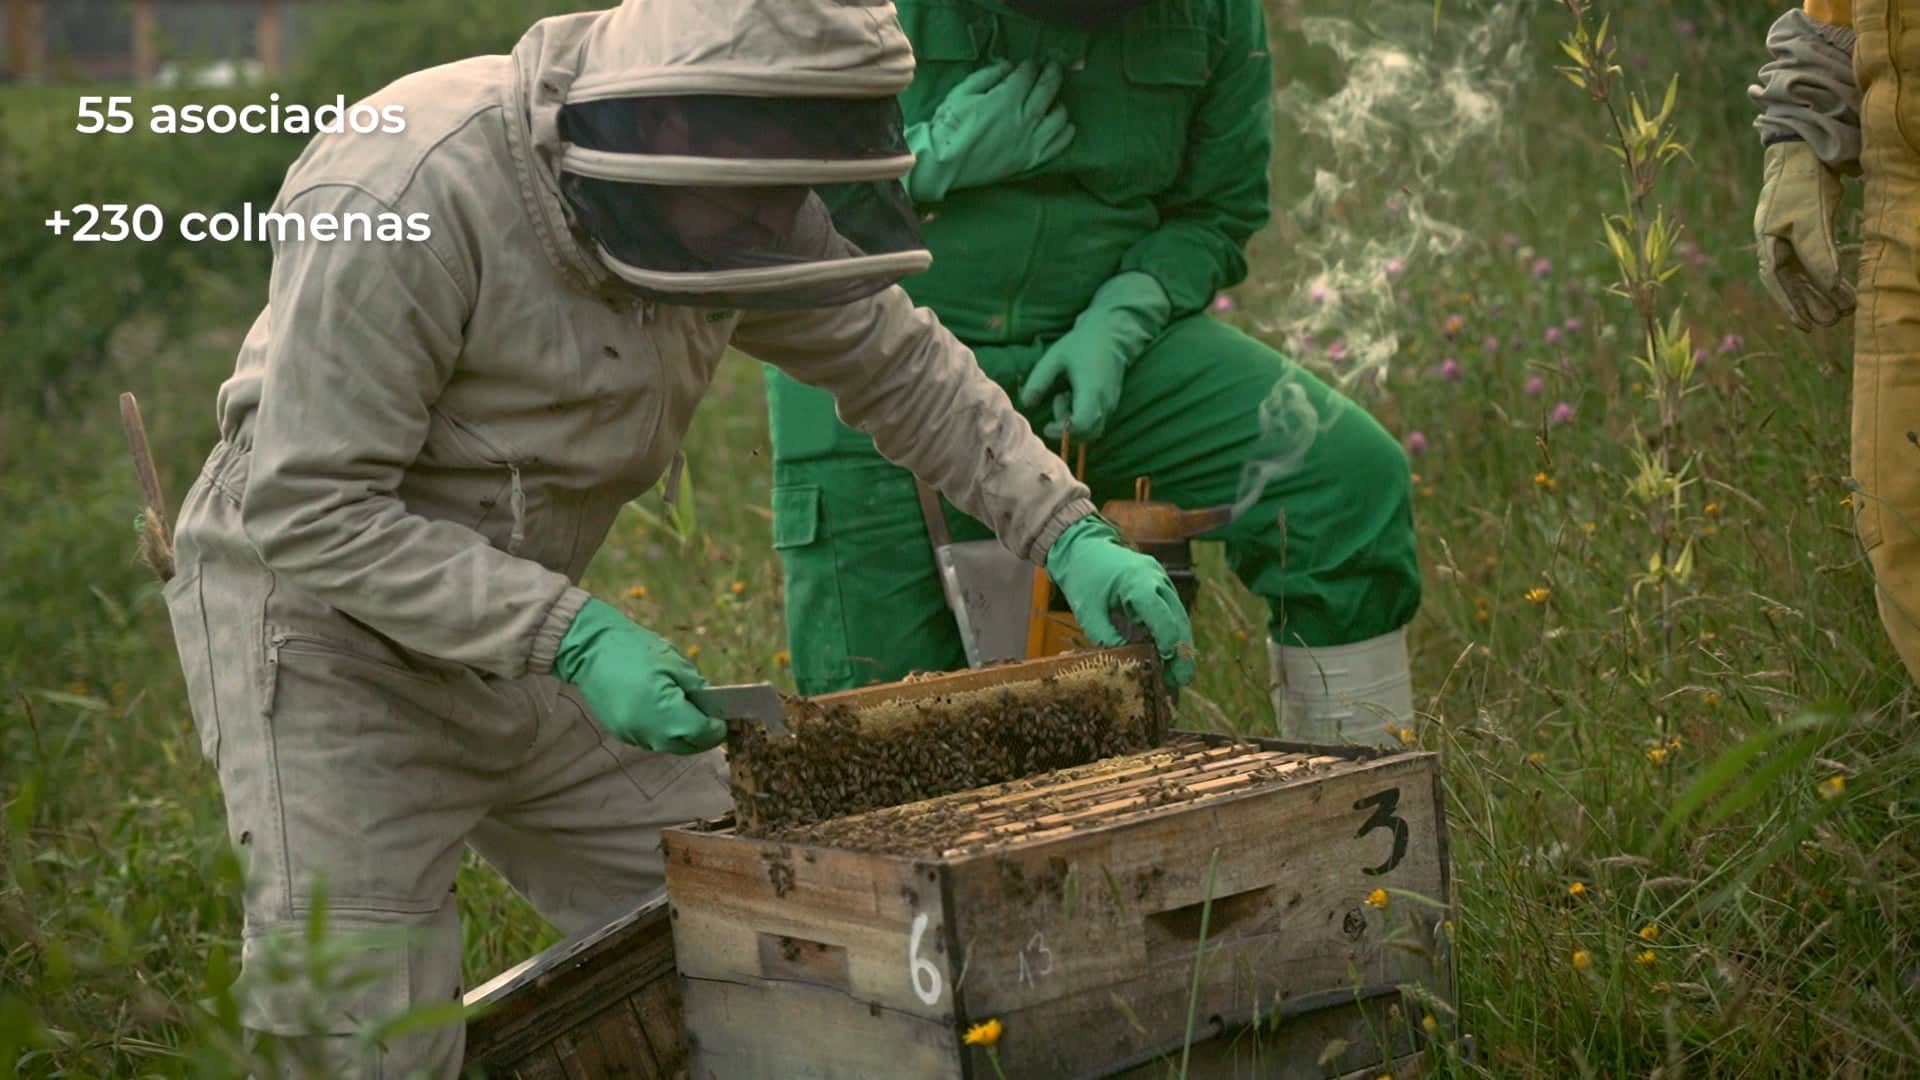 La mayor parte de nuestros asociados cuentan con la capacidad de manejar cultivos apicolas gracias a las capacitaciones brindadas por la alcaldia.